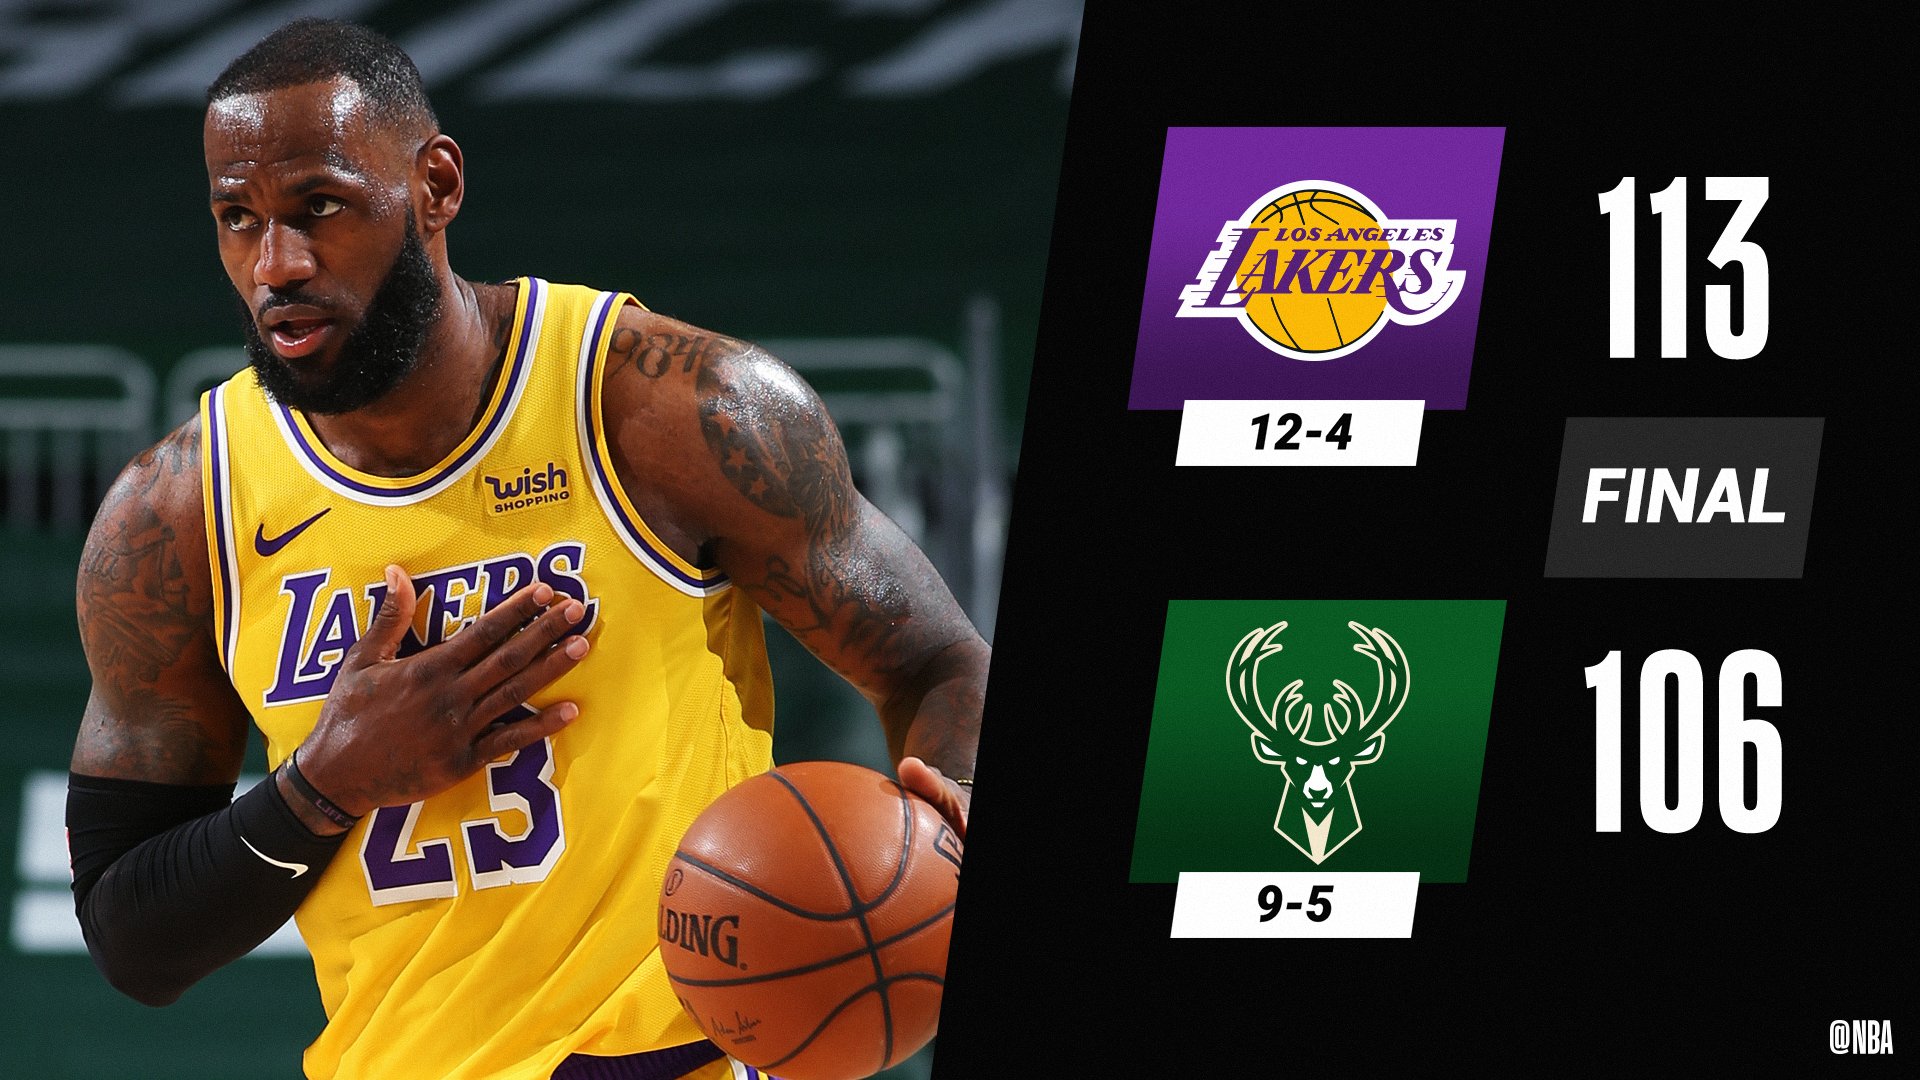 Lakers beat Bucks 113-106